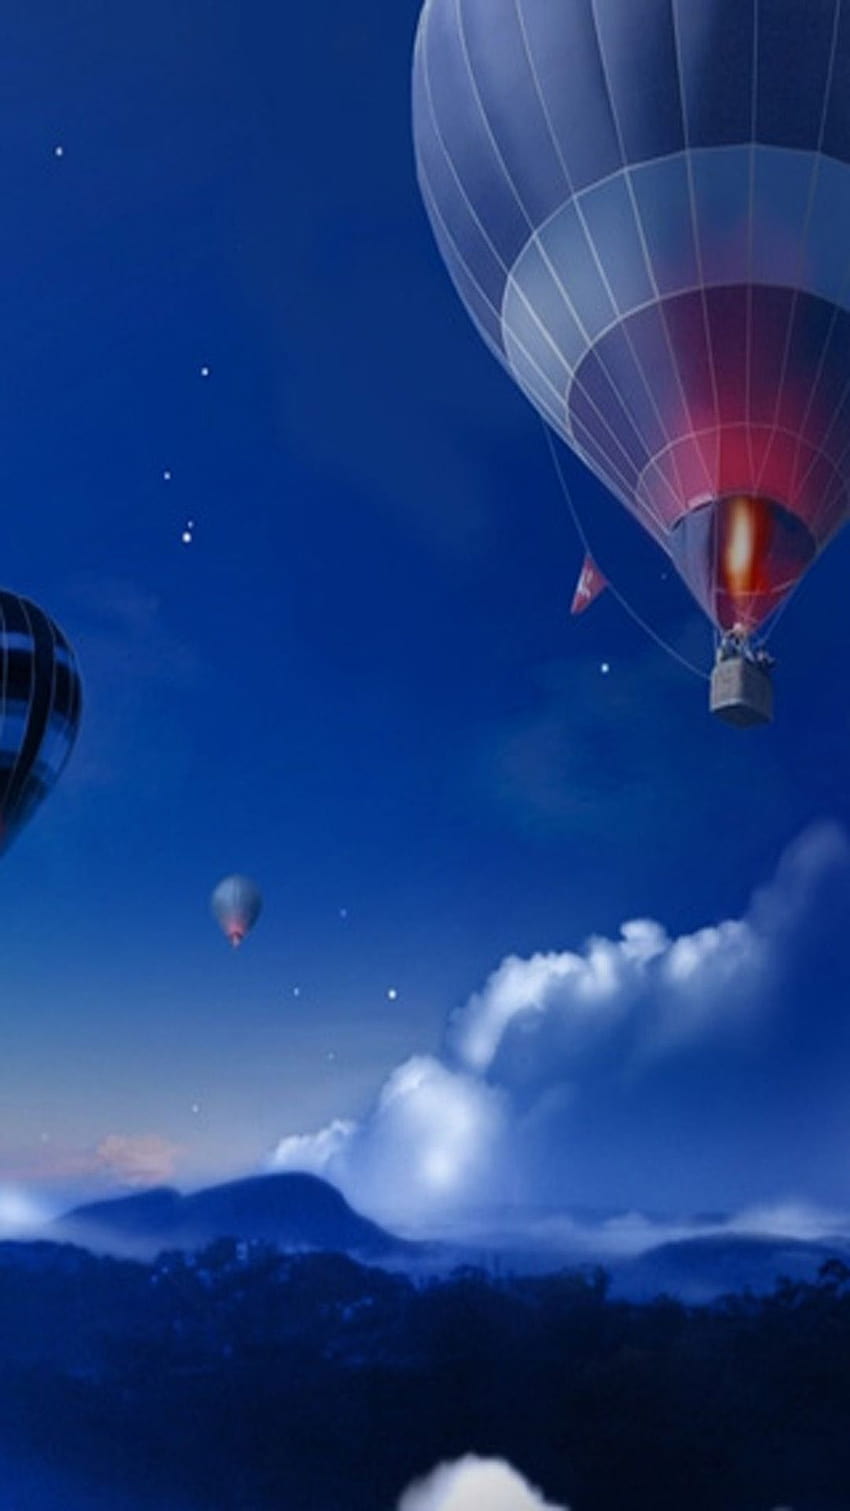 Hot air balloon iphone Samsung Galaxy S5 HD phone wallpaper